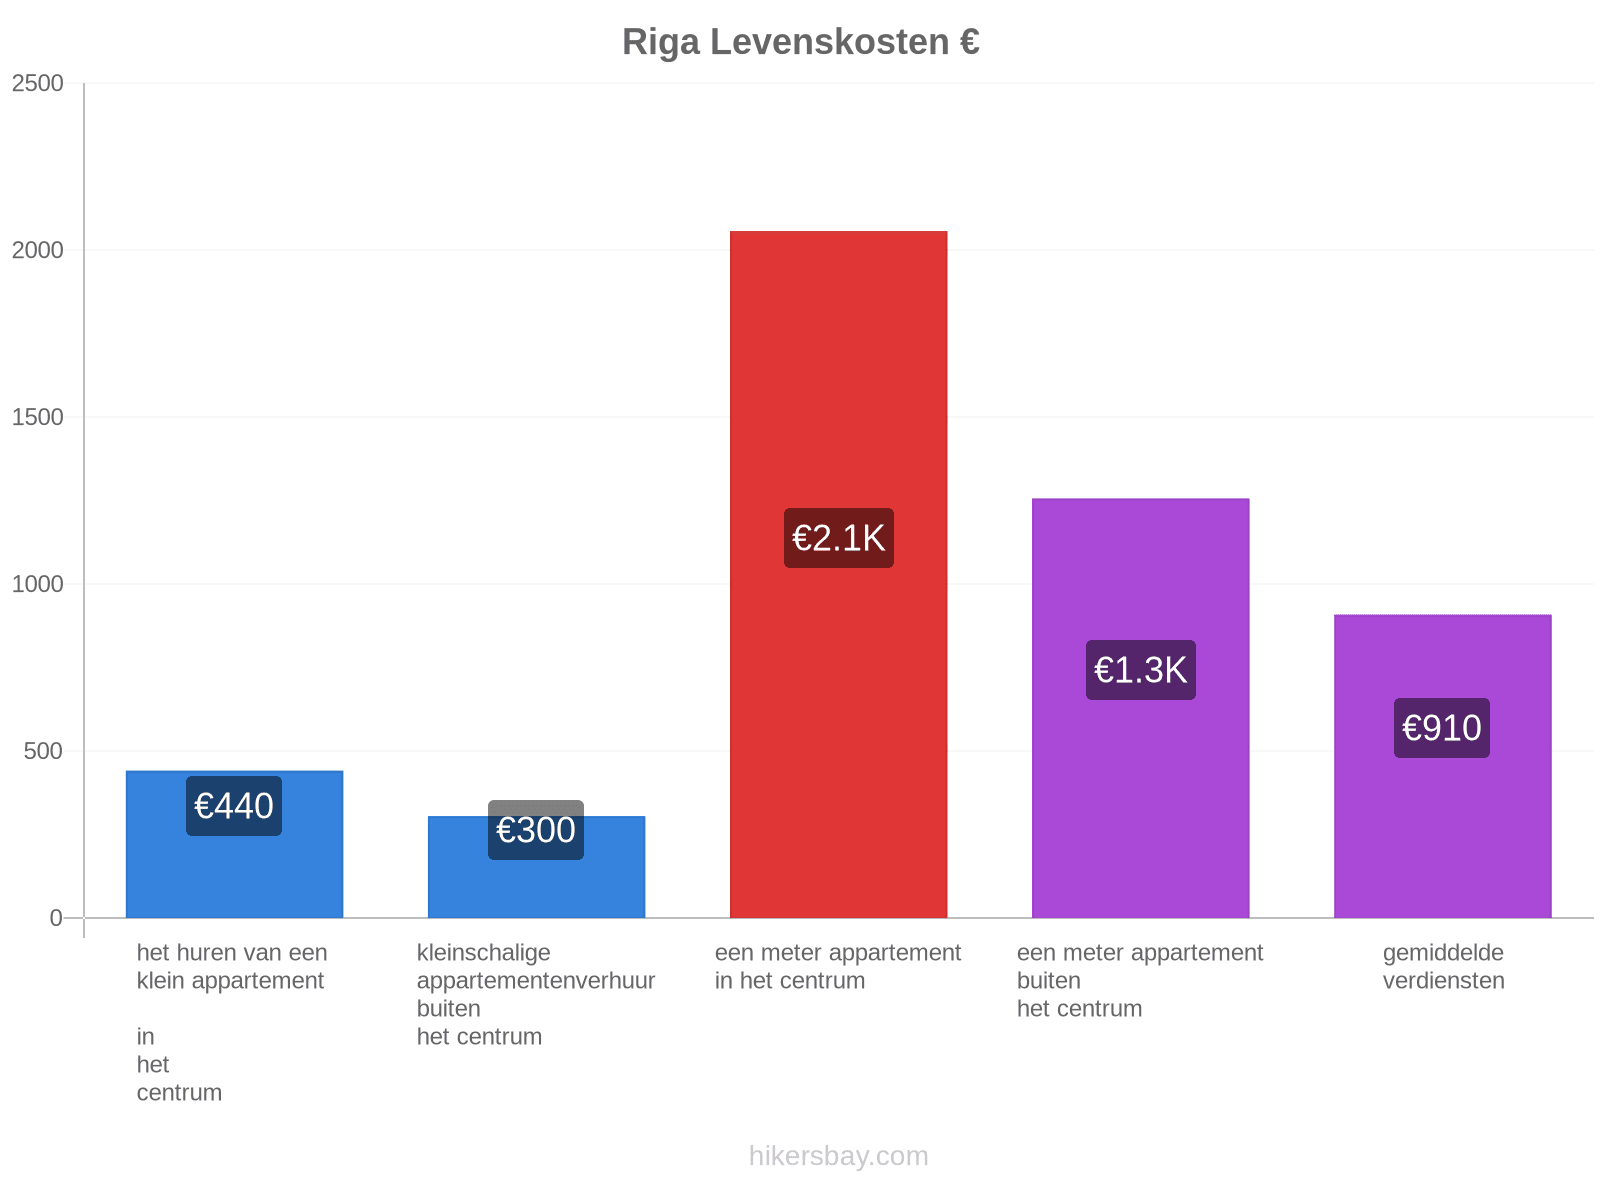 Riga levenskosten hikersbay.com